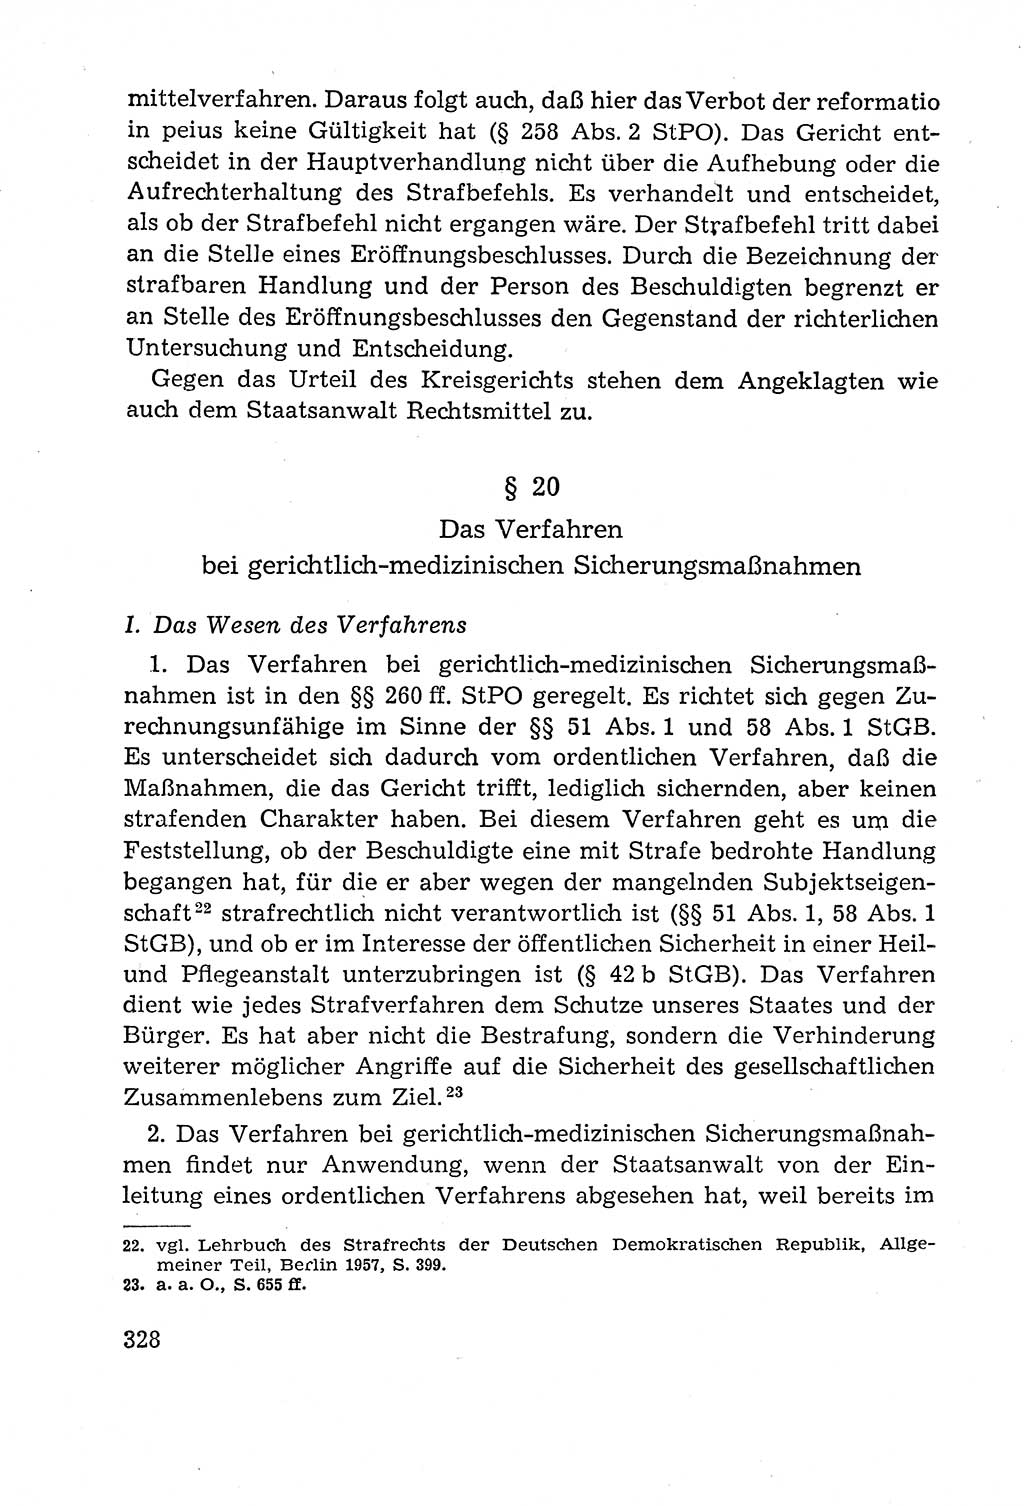 Leitfaden des Strafprozeßrechts der Deutschen Demokratischen Republik (DDR) 1959, Seite 328 (LF StPR DDR 1959, S. 328)